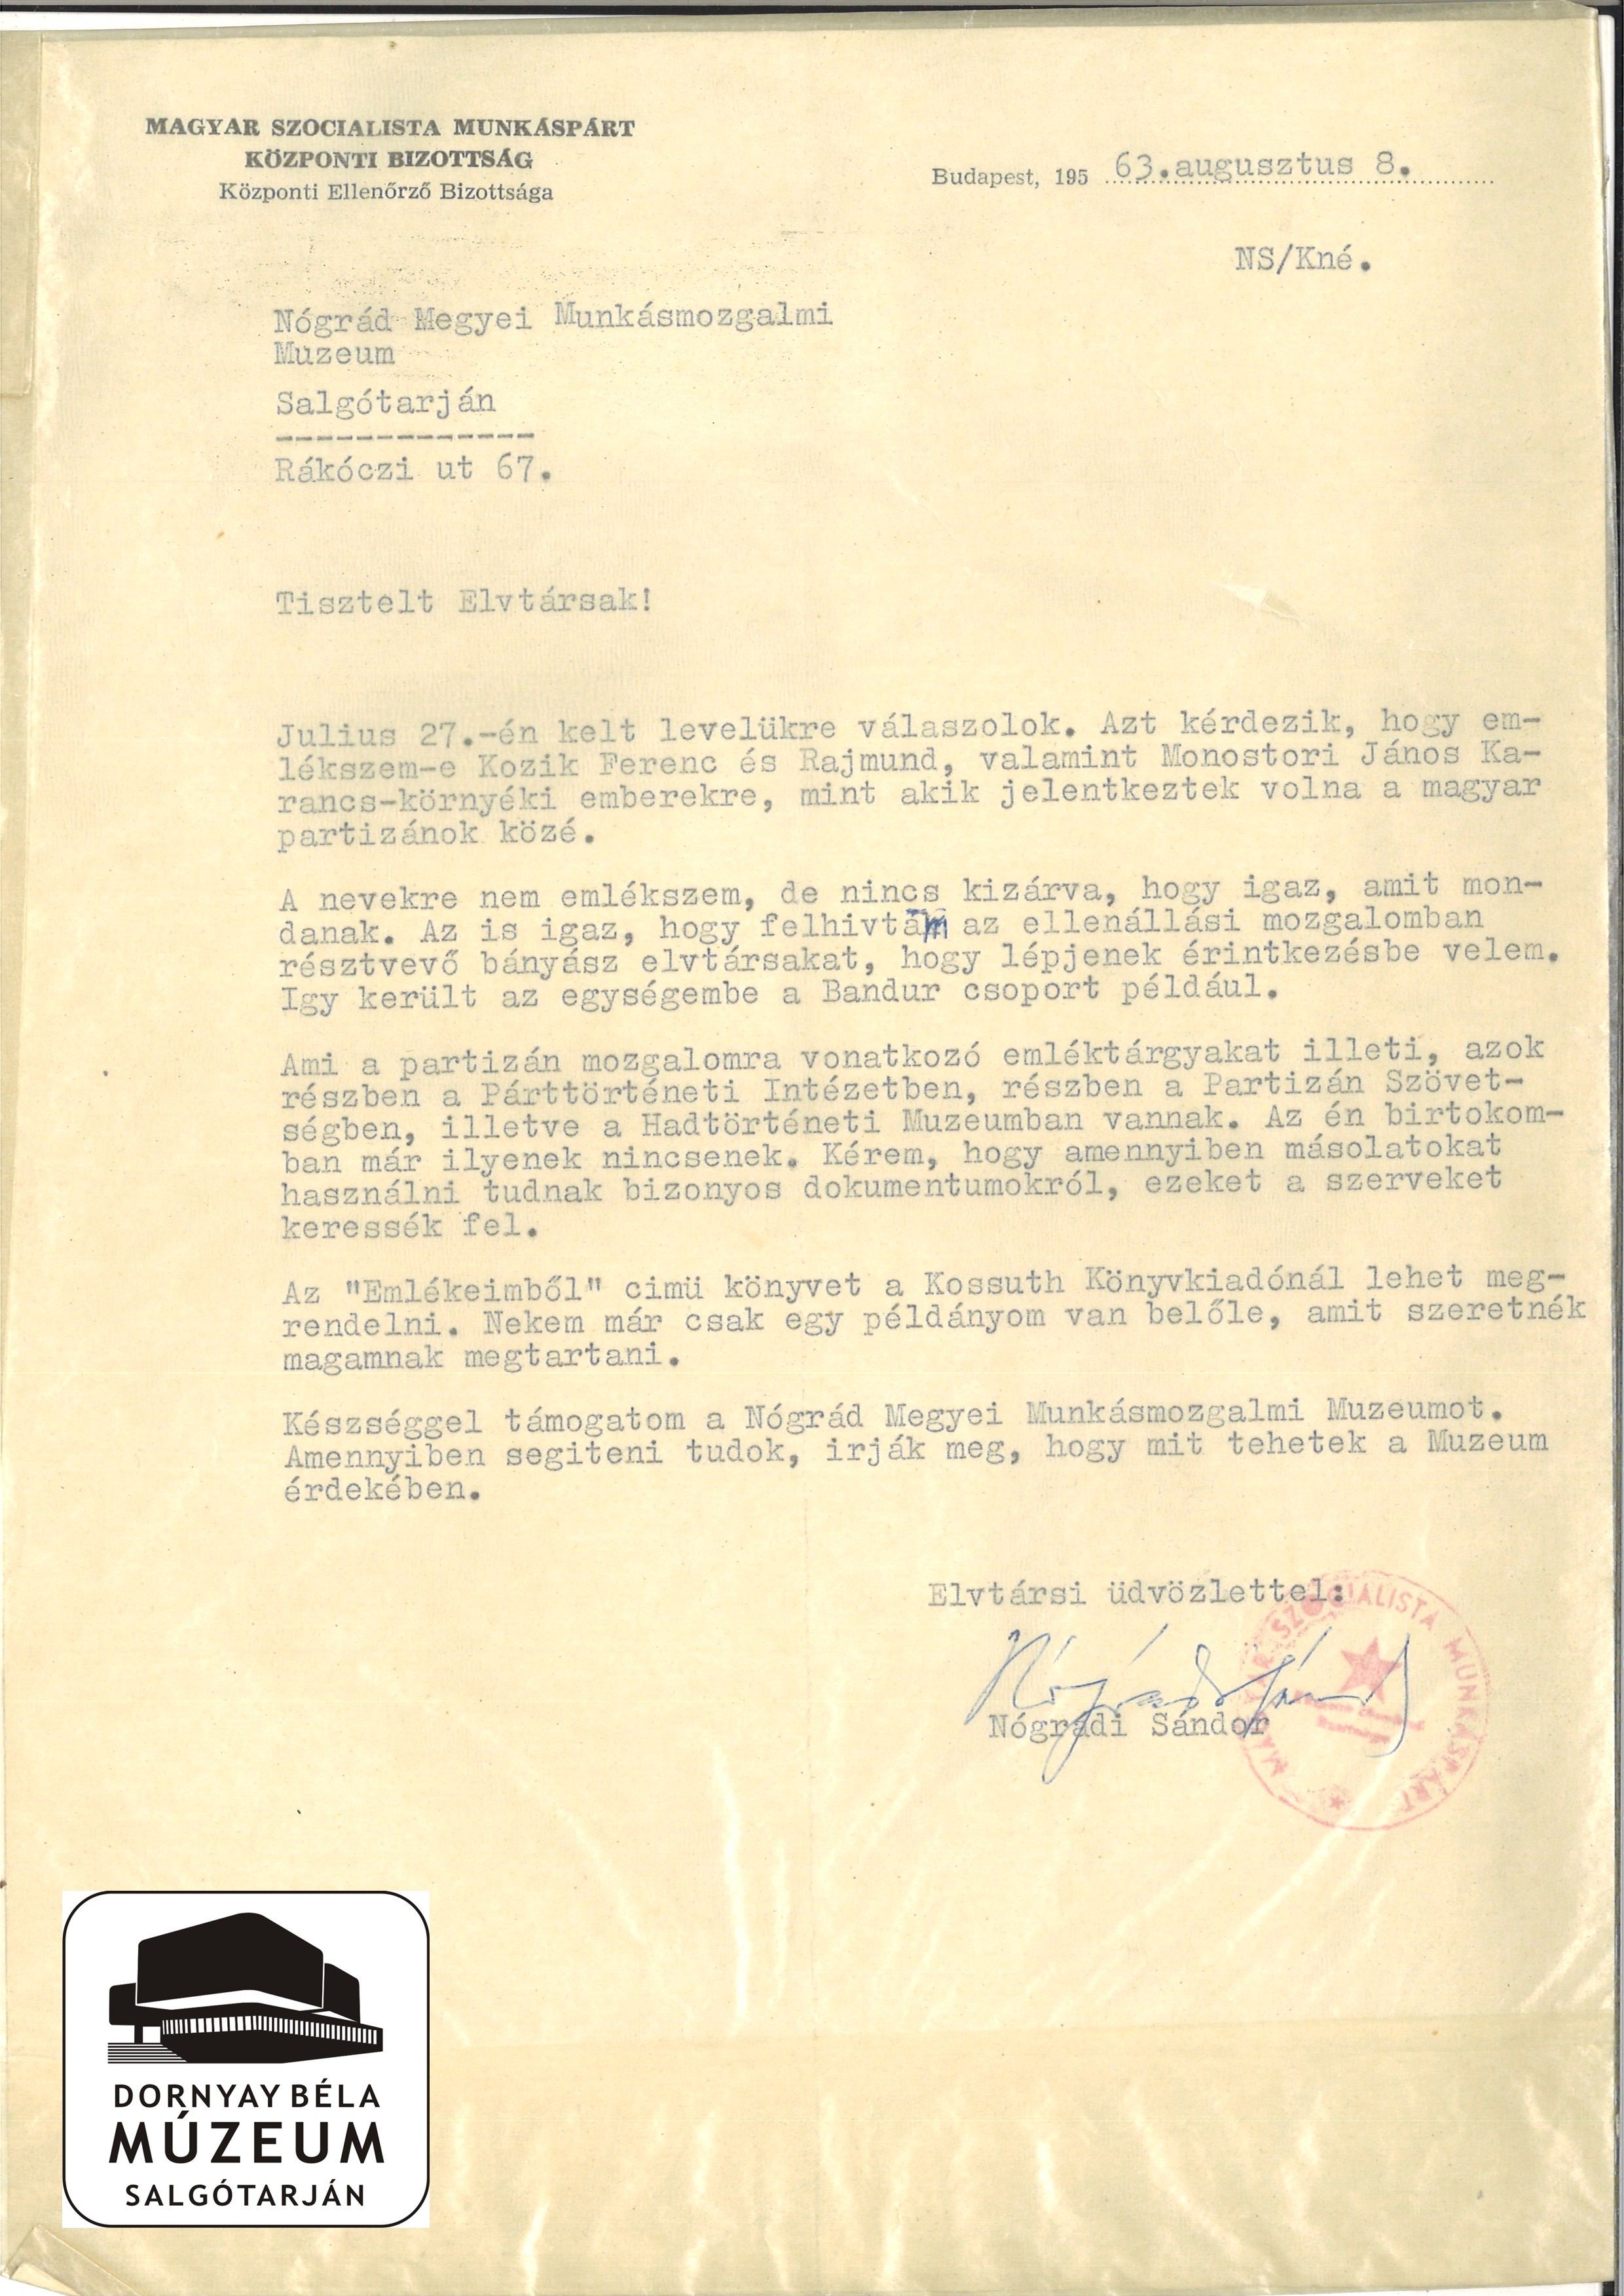 Nógrádi Sándor levele a Nógrád megyei munkásmozgalmi múzeumhoz (Dornyay Béla Múzeum, Salgótarján CC BY-NC-SA)